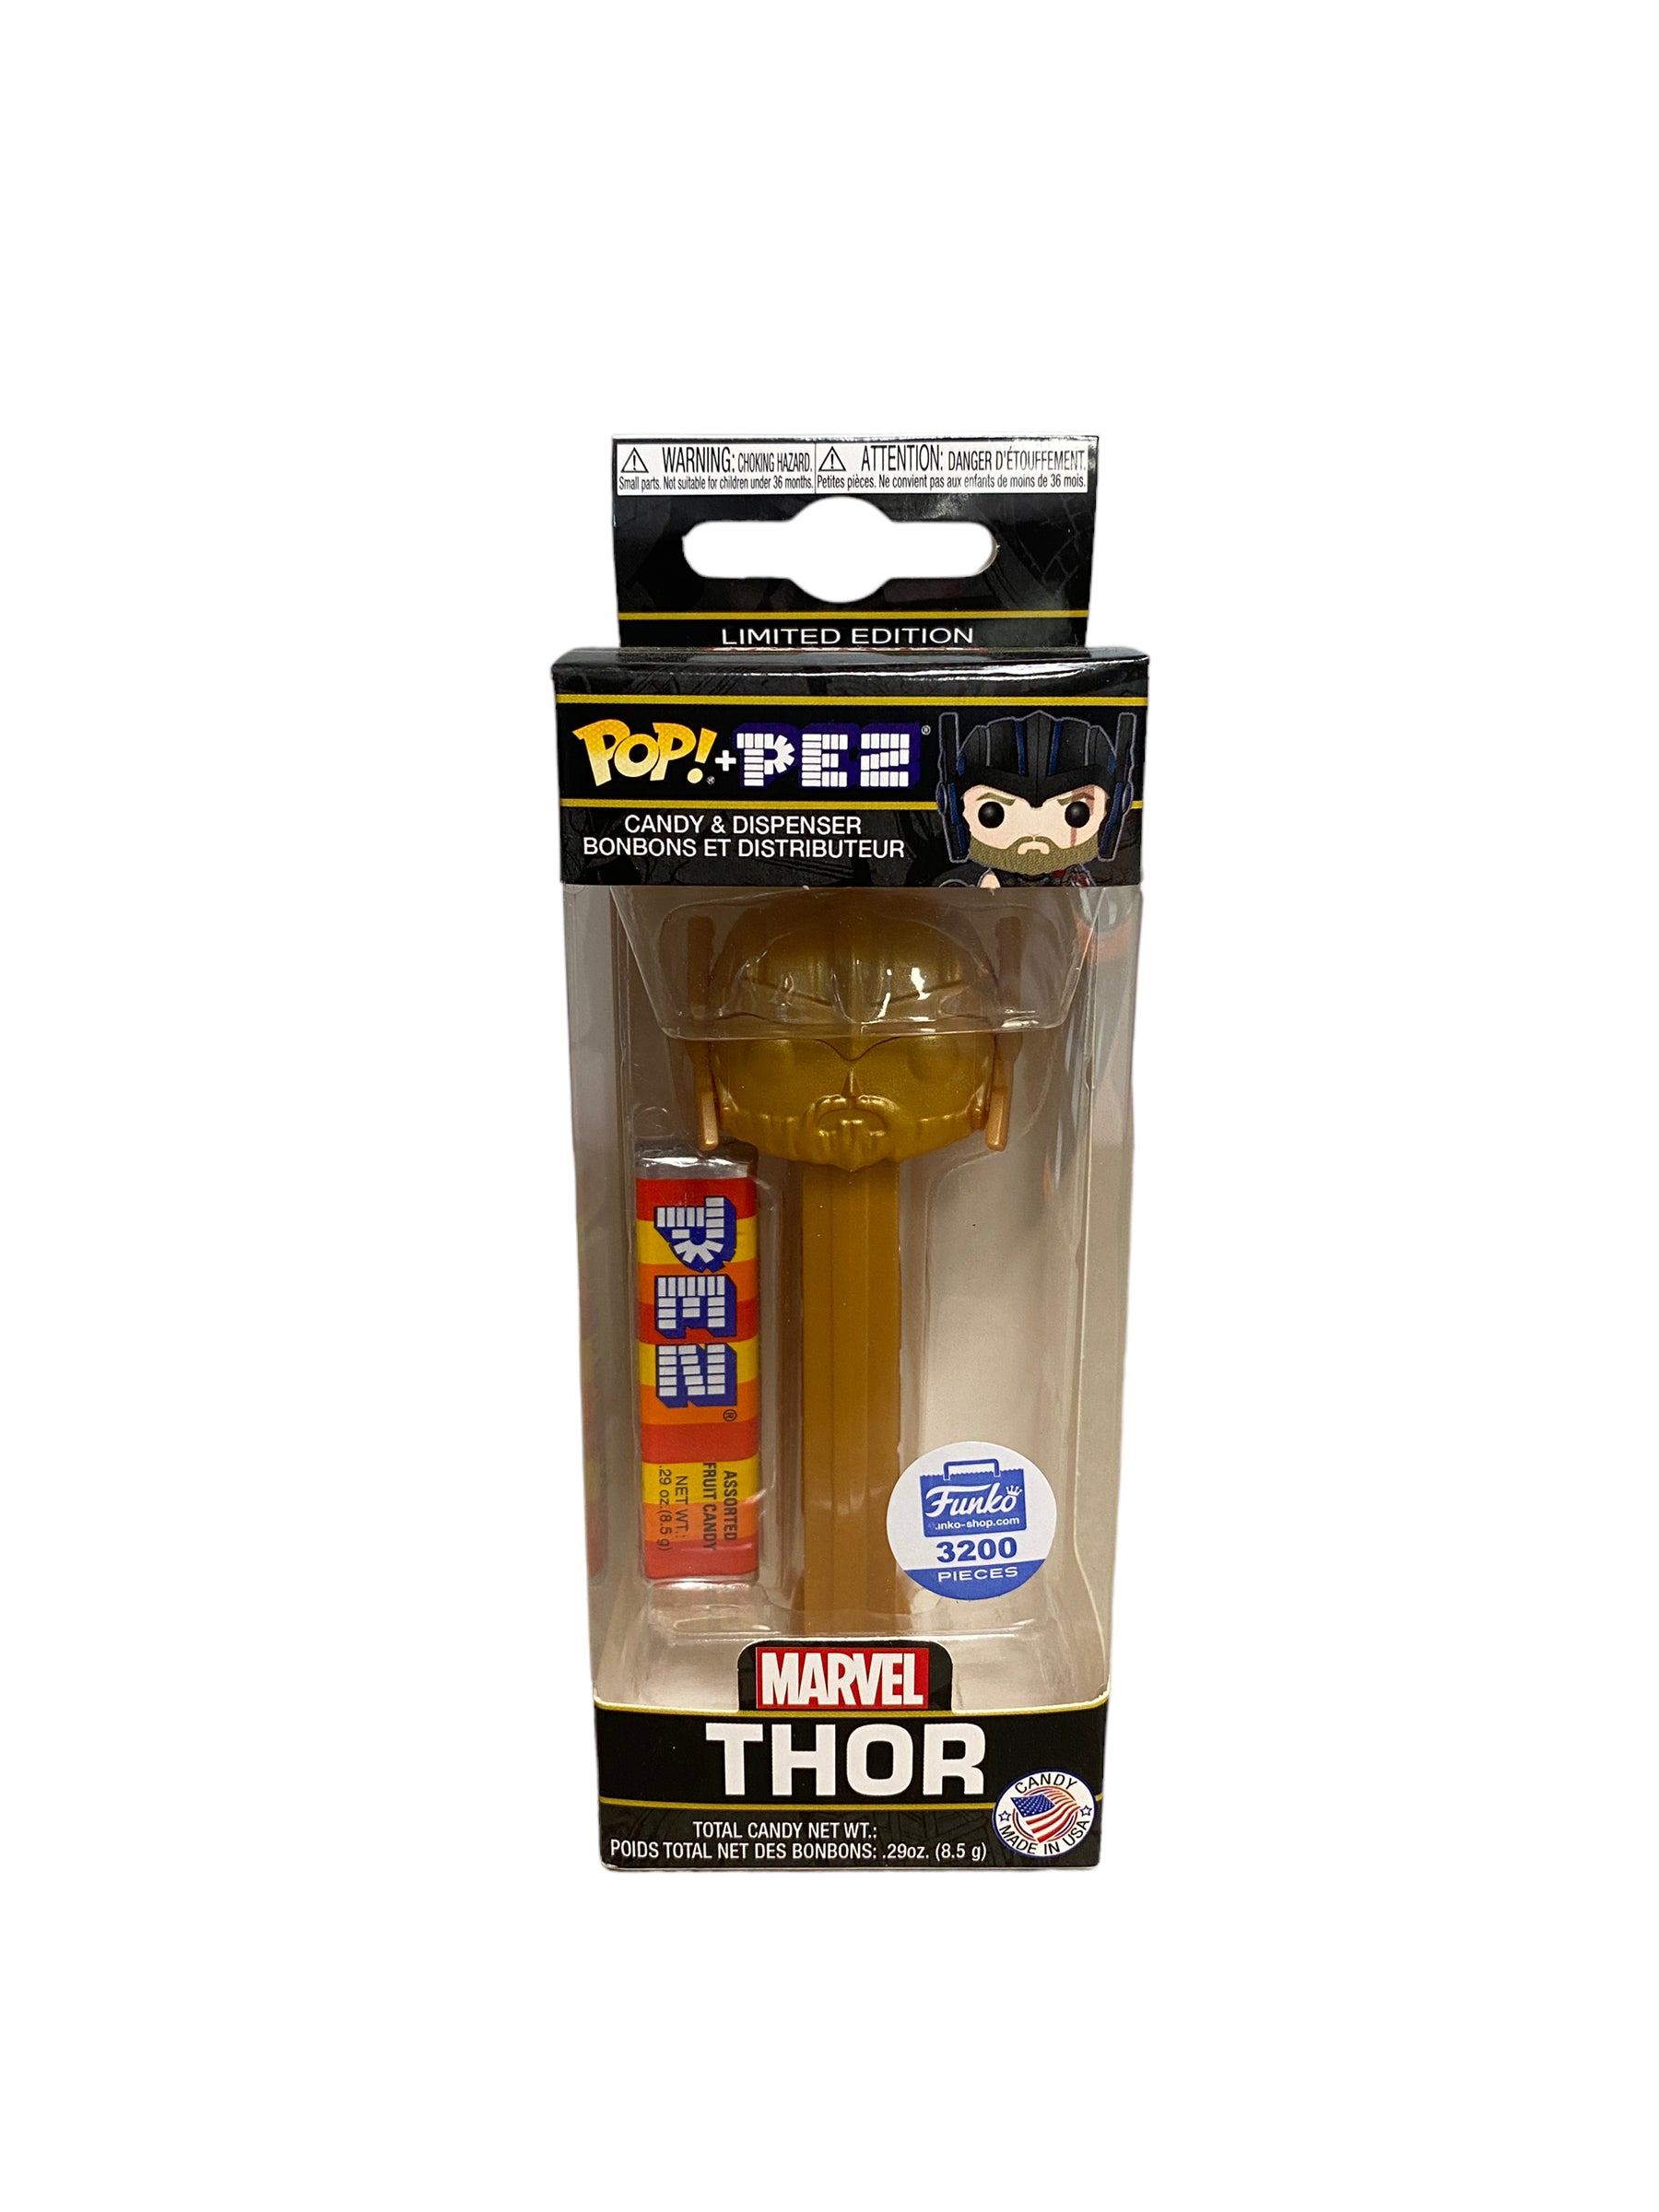 Thor (Gold) Funko Pop Pez! - Marvel - Funko Shop Exclusive LE3200 Pcs - Condition 8.75/10